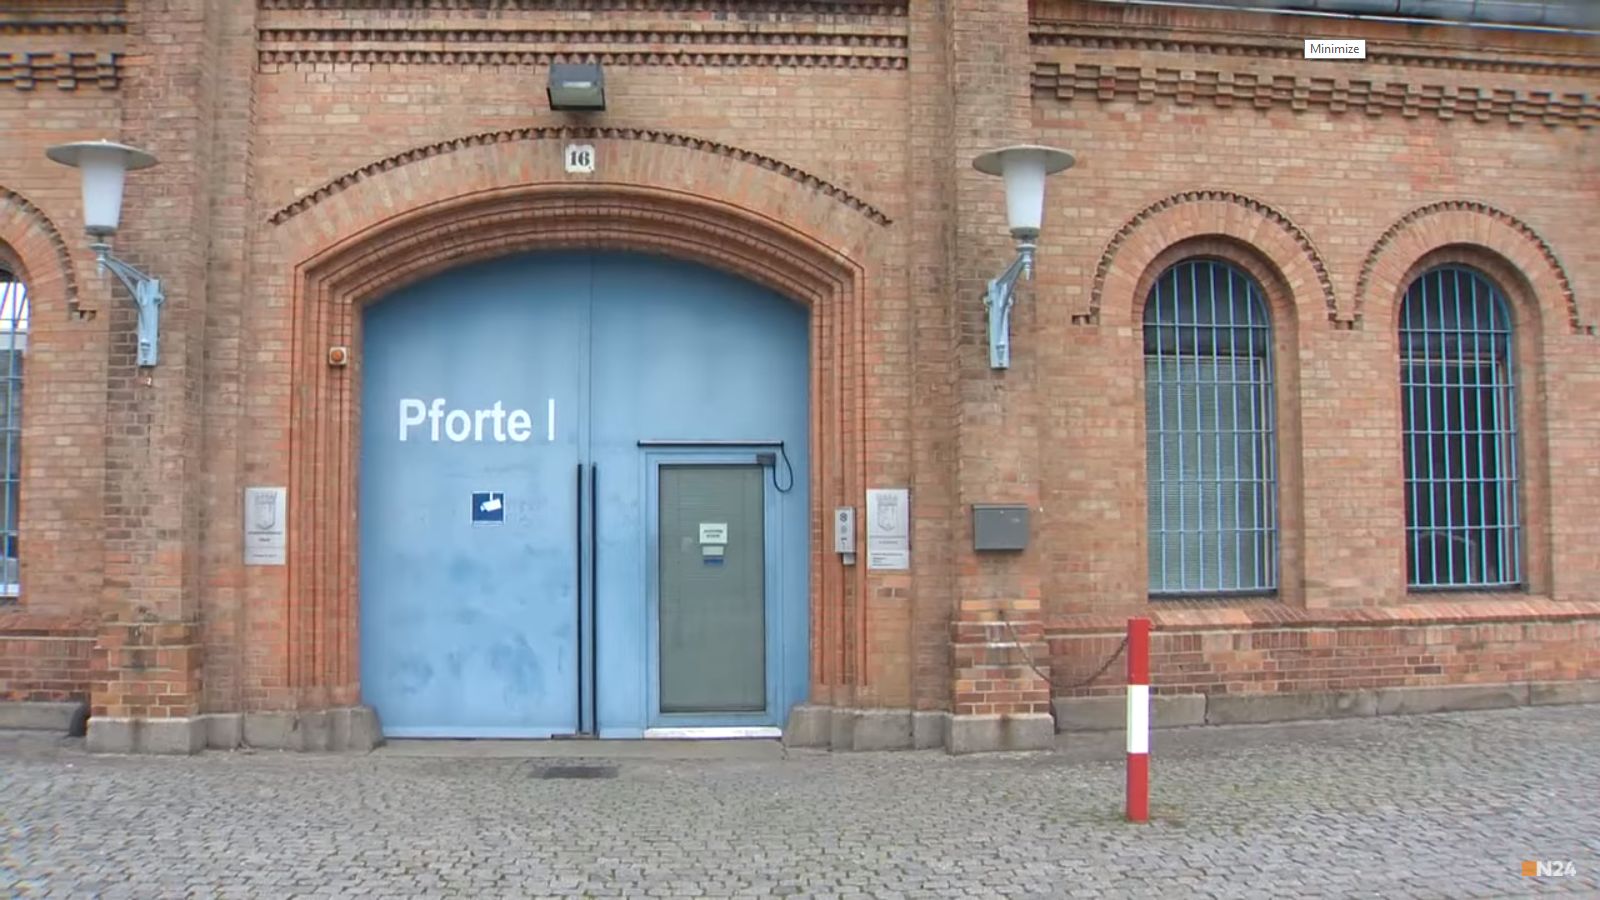 Kolejni więźniowie im uciekli. Berliński zakład karny stał się przedmiotem kpin